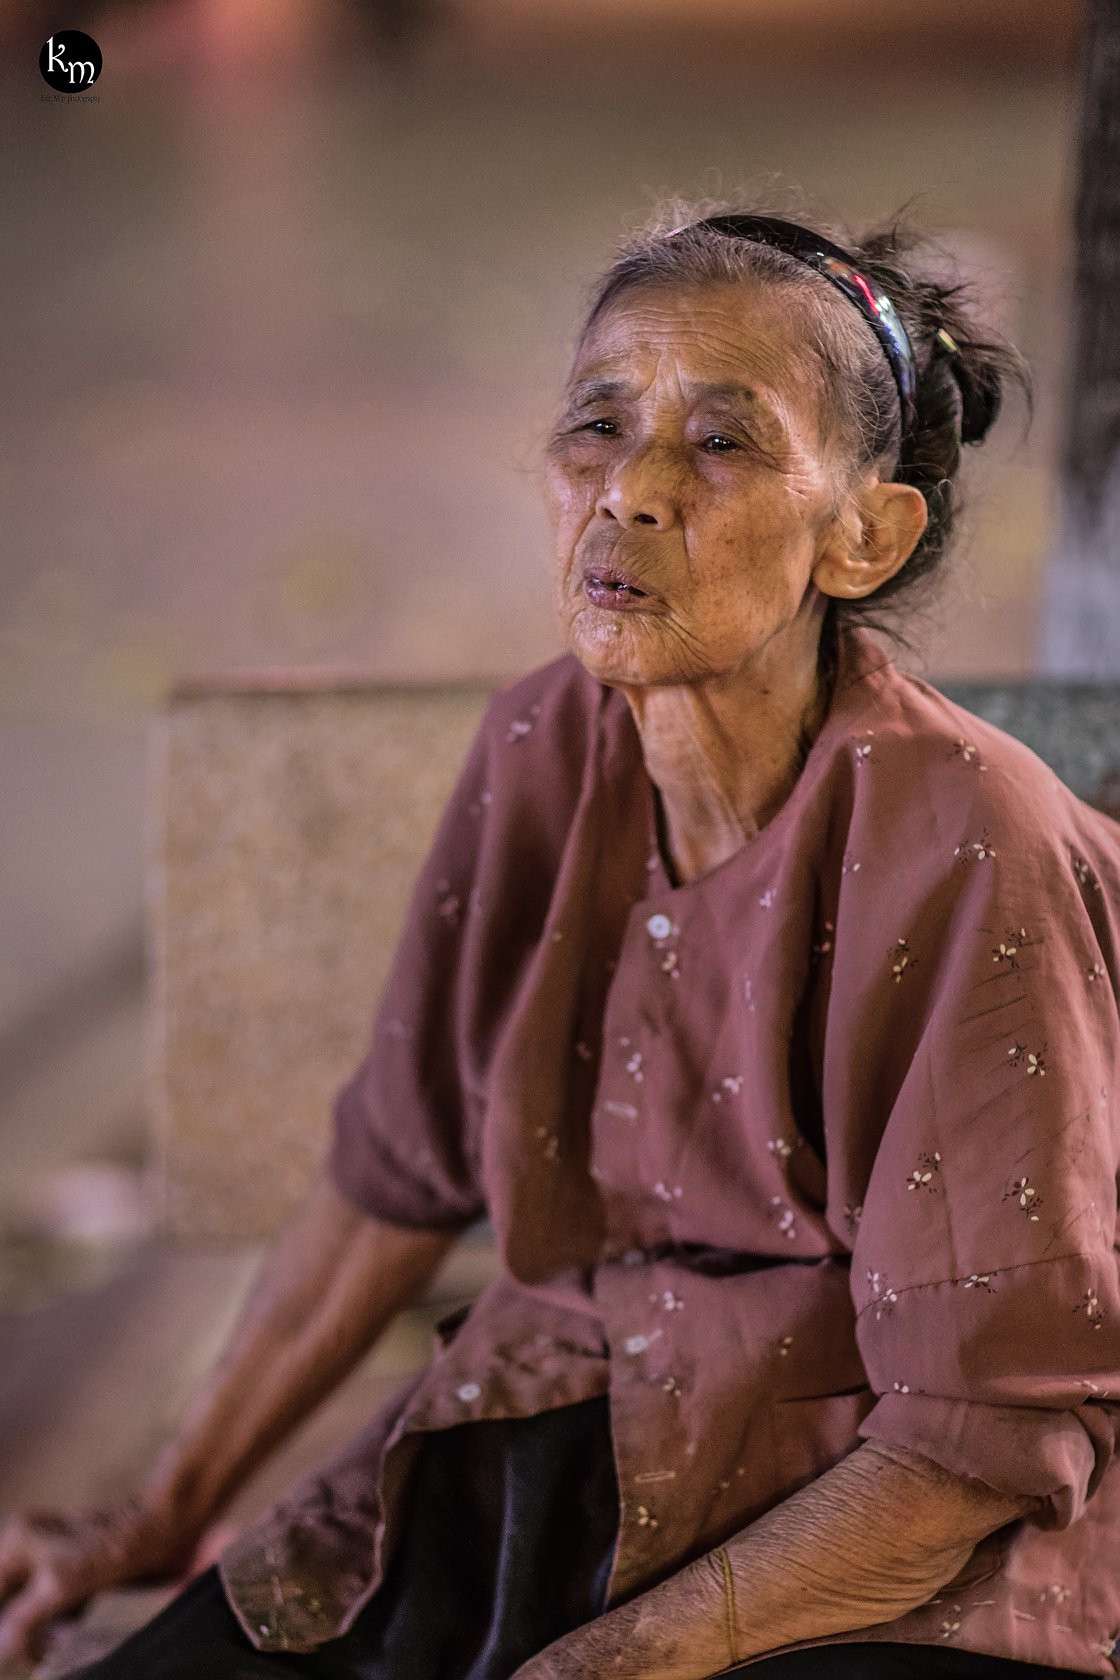 Rơi nước mắt hình ảnh cụ bà 83 tuổi lưng còng vất vả đi nhặt rác ...